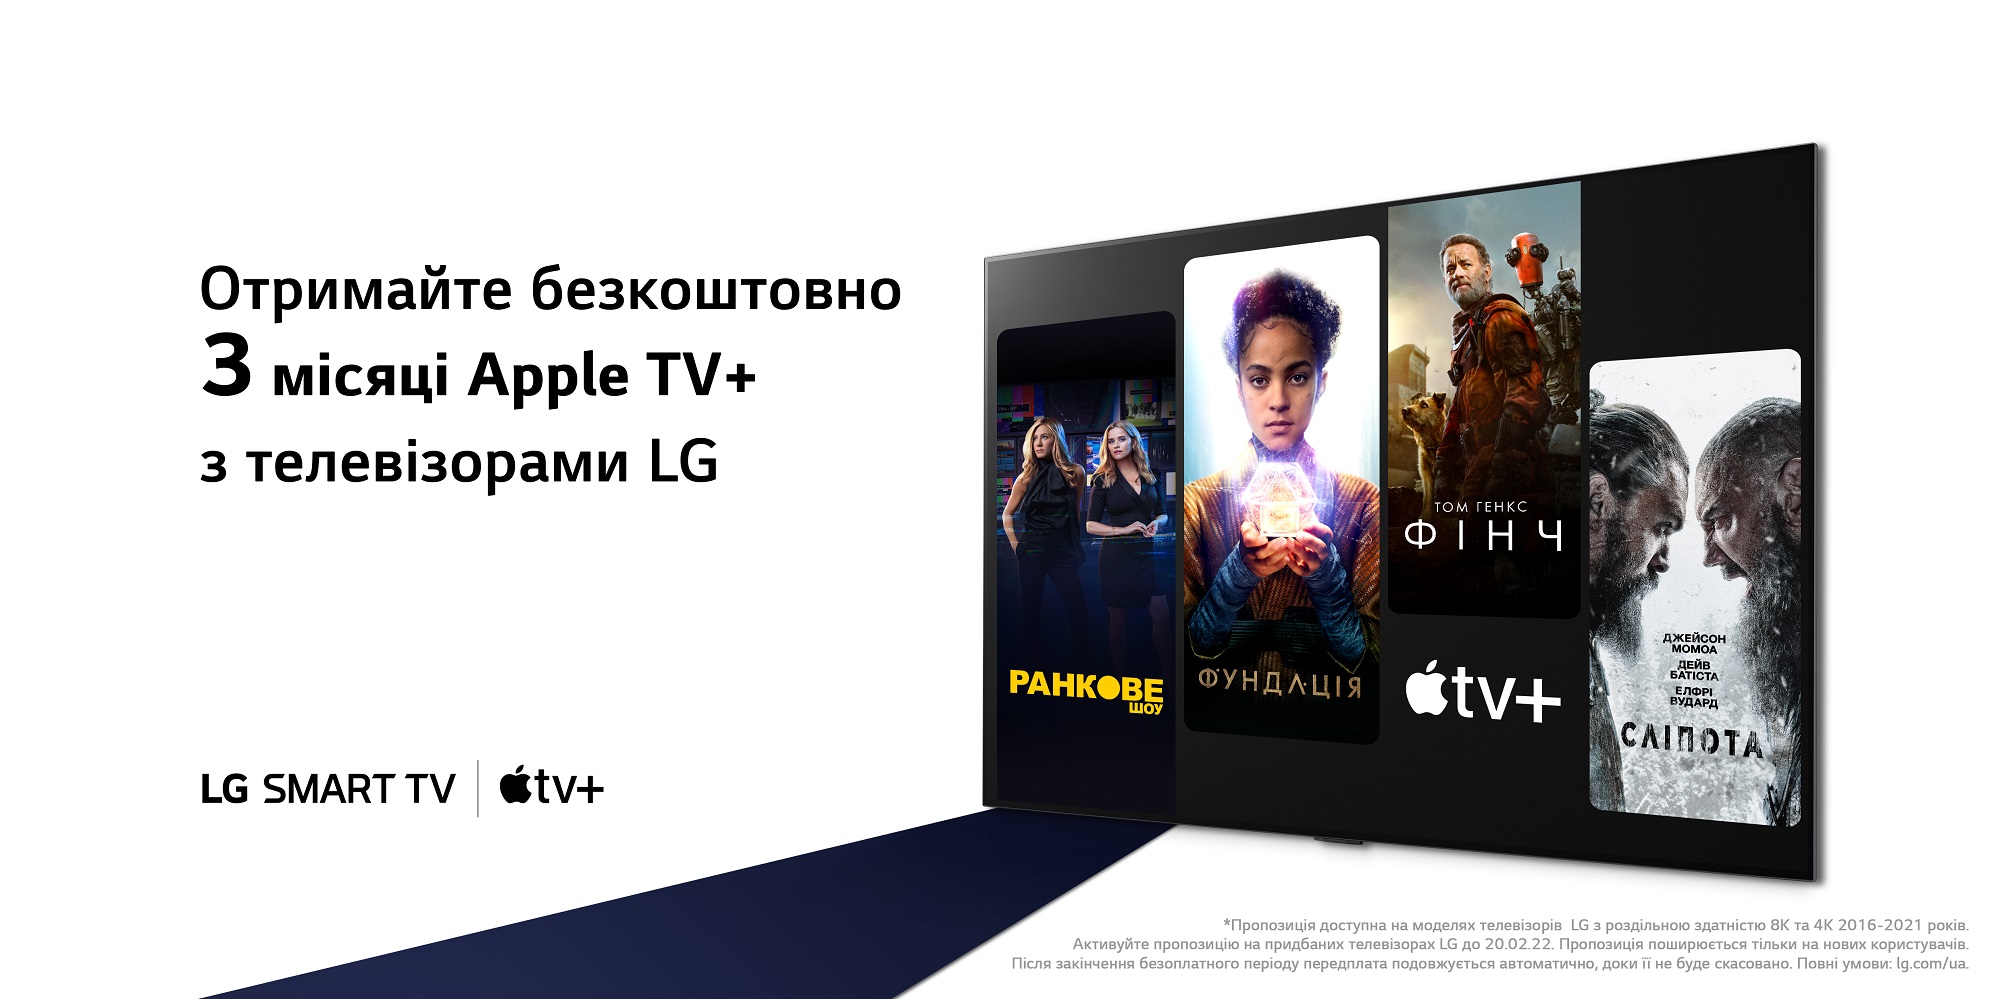 Trzy miesiące za darmo Apple TV+ na telewizorach LG - jak skorzystać z oferty